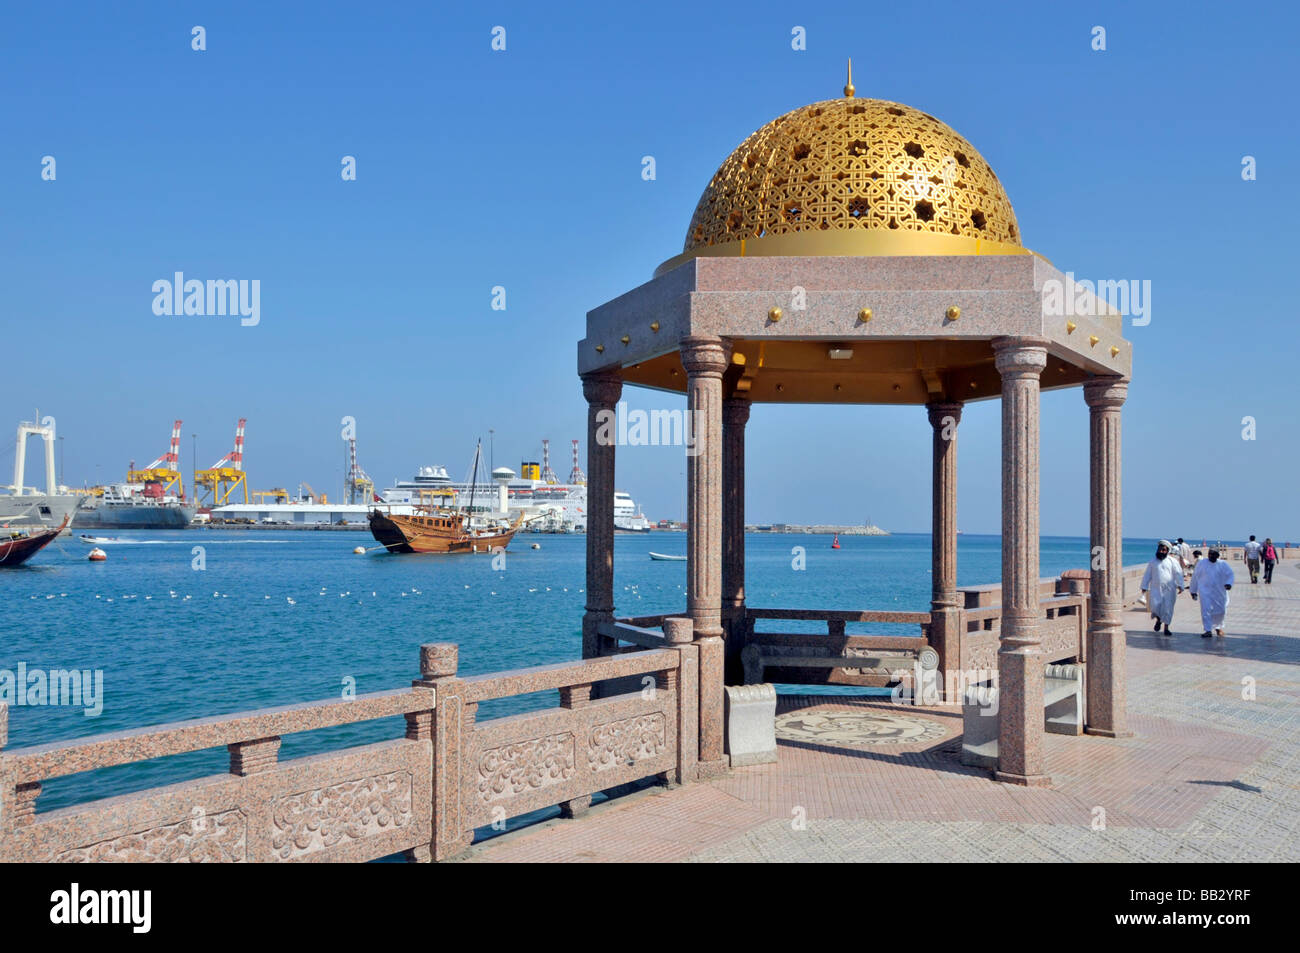 Des huws Muscat amarrés dans le port de Muttrah avec un bateau de croisière Costa amarré à la promenade de la corniche de Port Sultan Qaboos et un abri solaire dans le golfe d'Oman au Moyen-Orient Banque D'Images